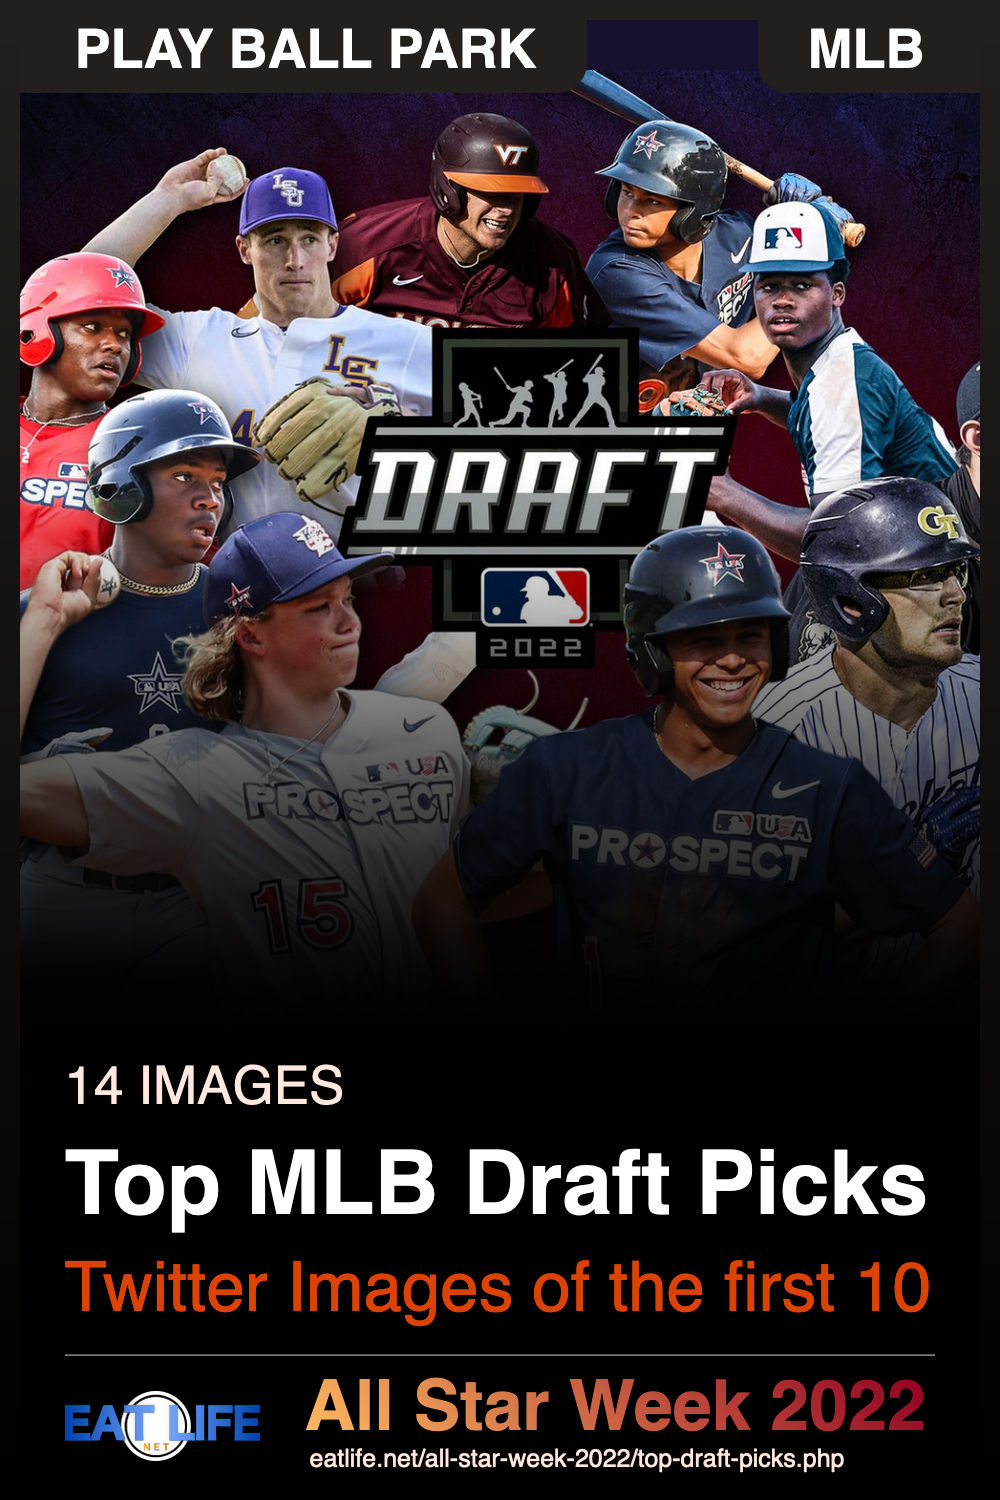 Top Draft Picks